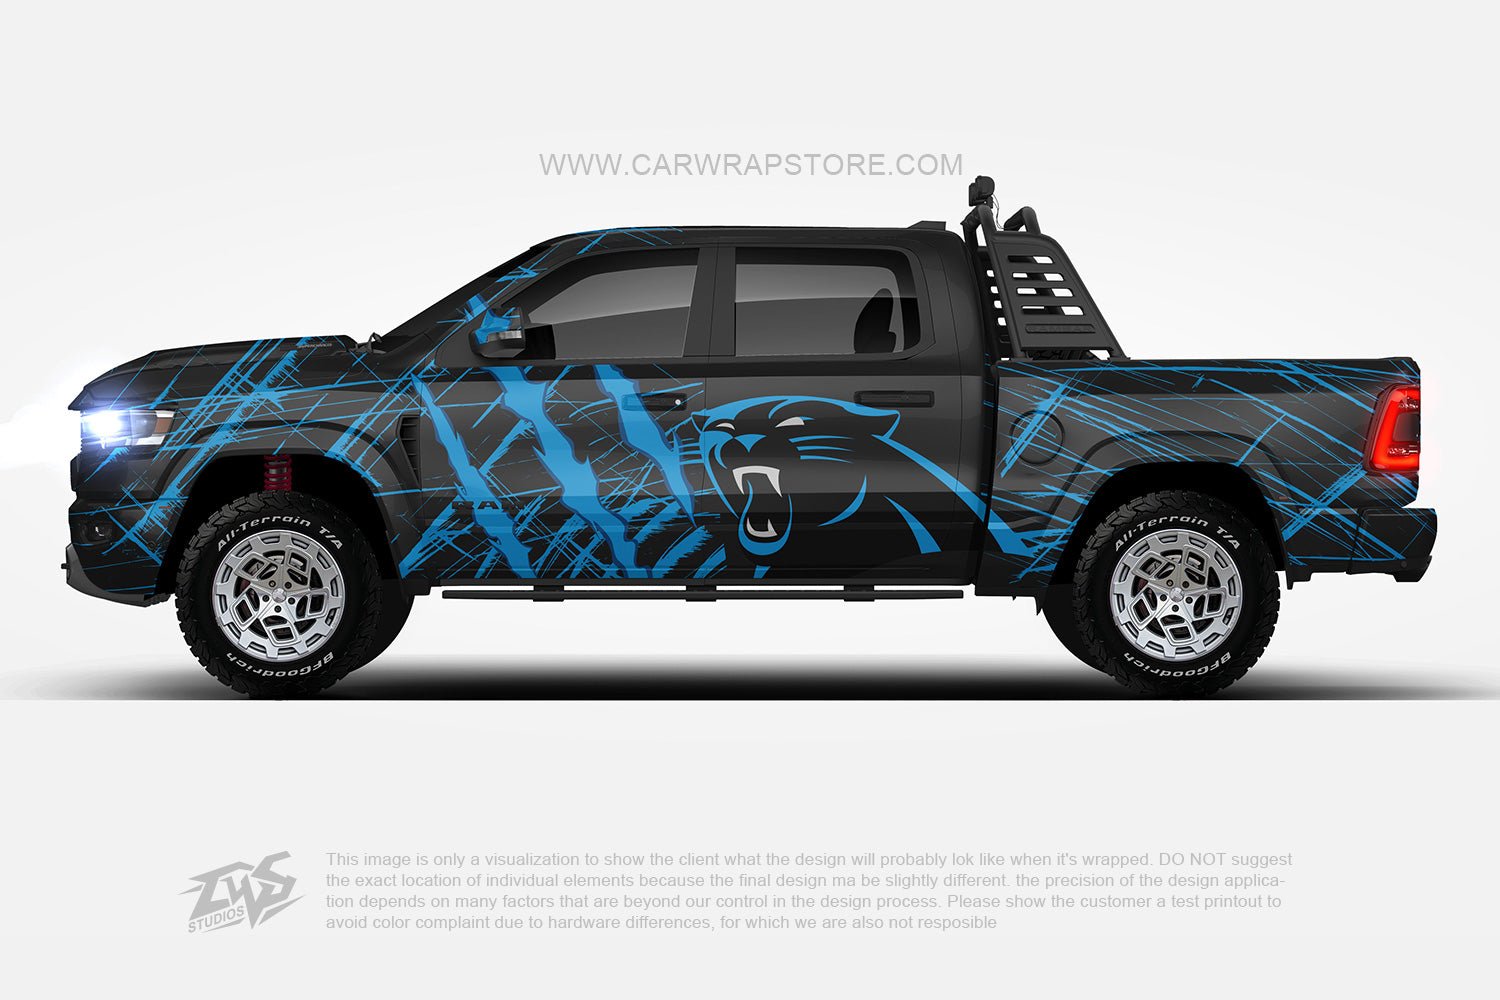 Carolina Panthers【NFL-03】 - Car Wrap Store